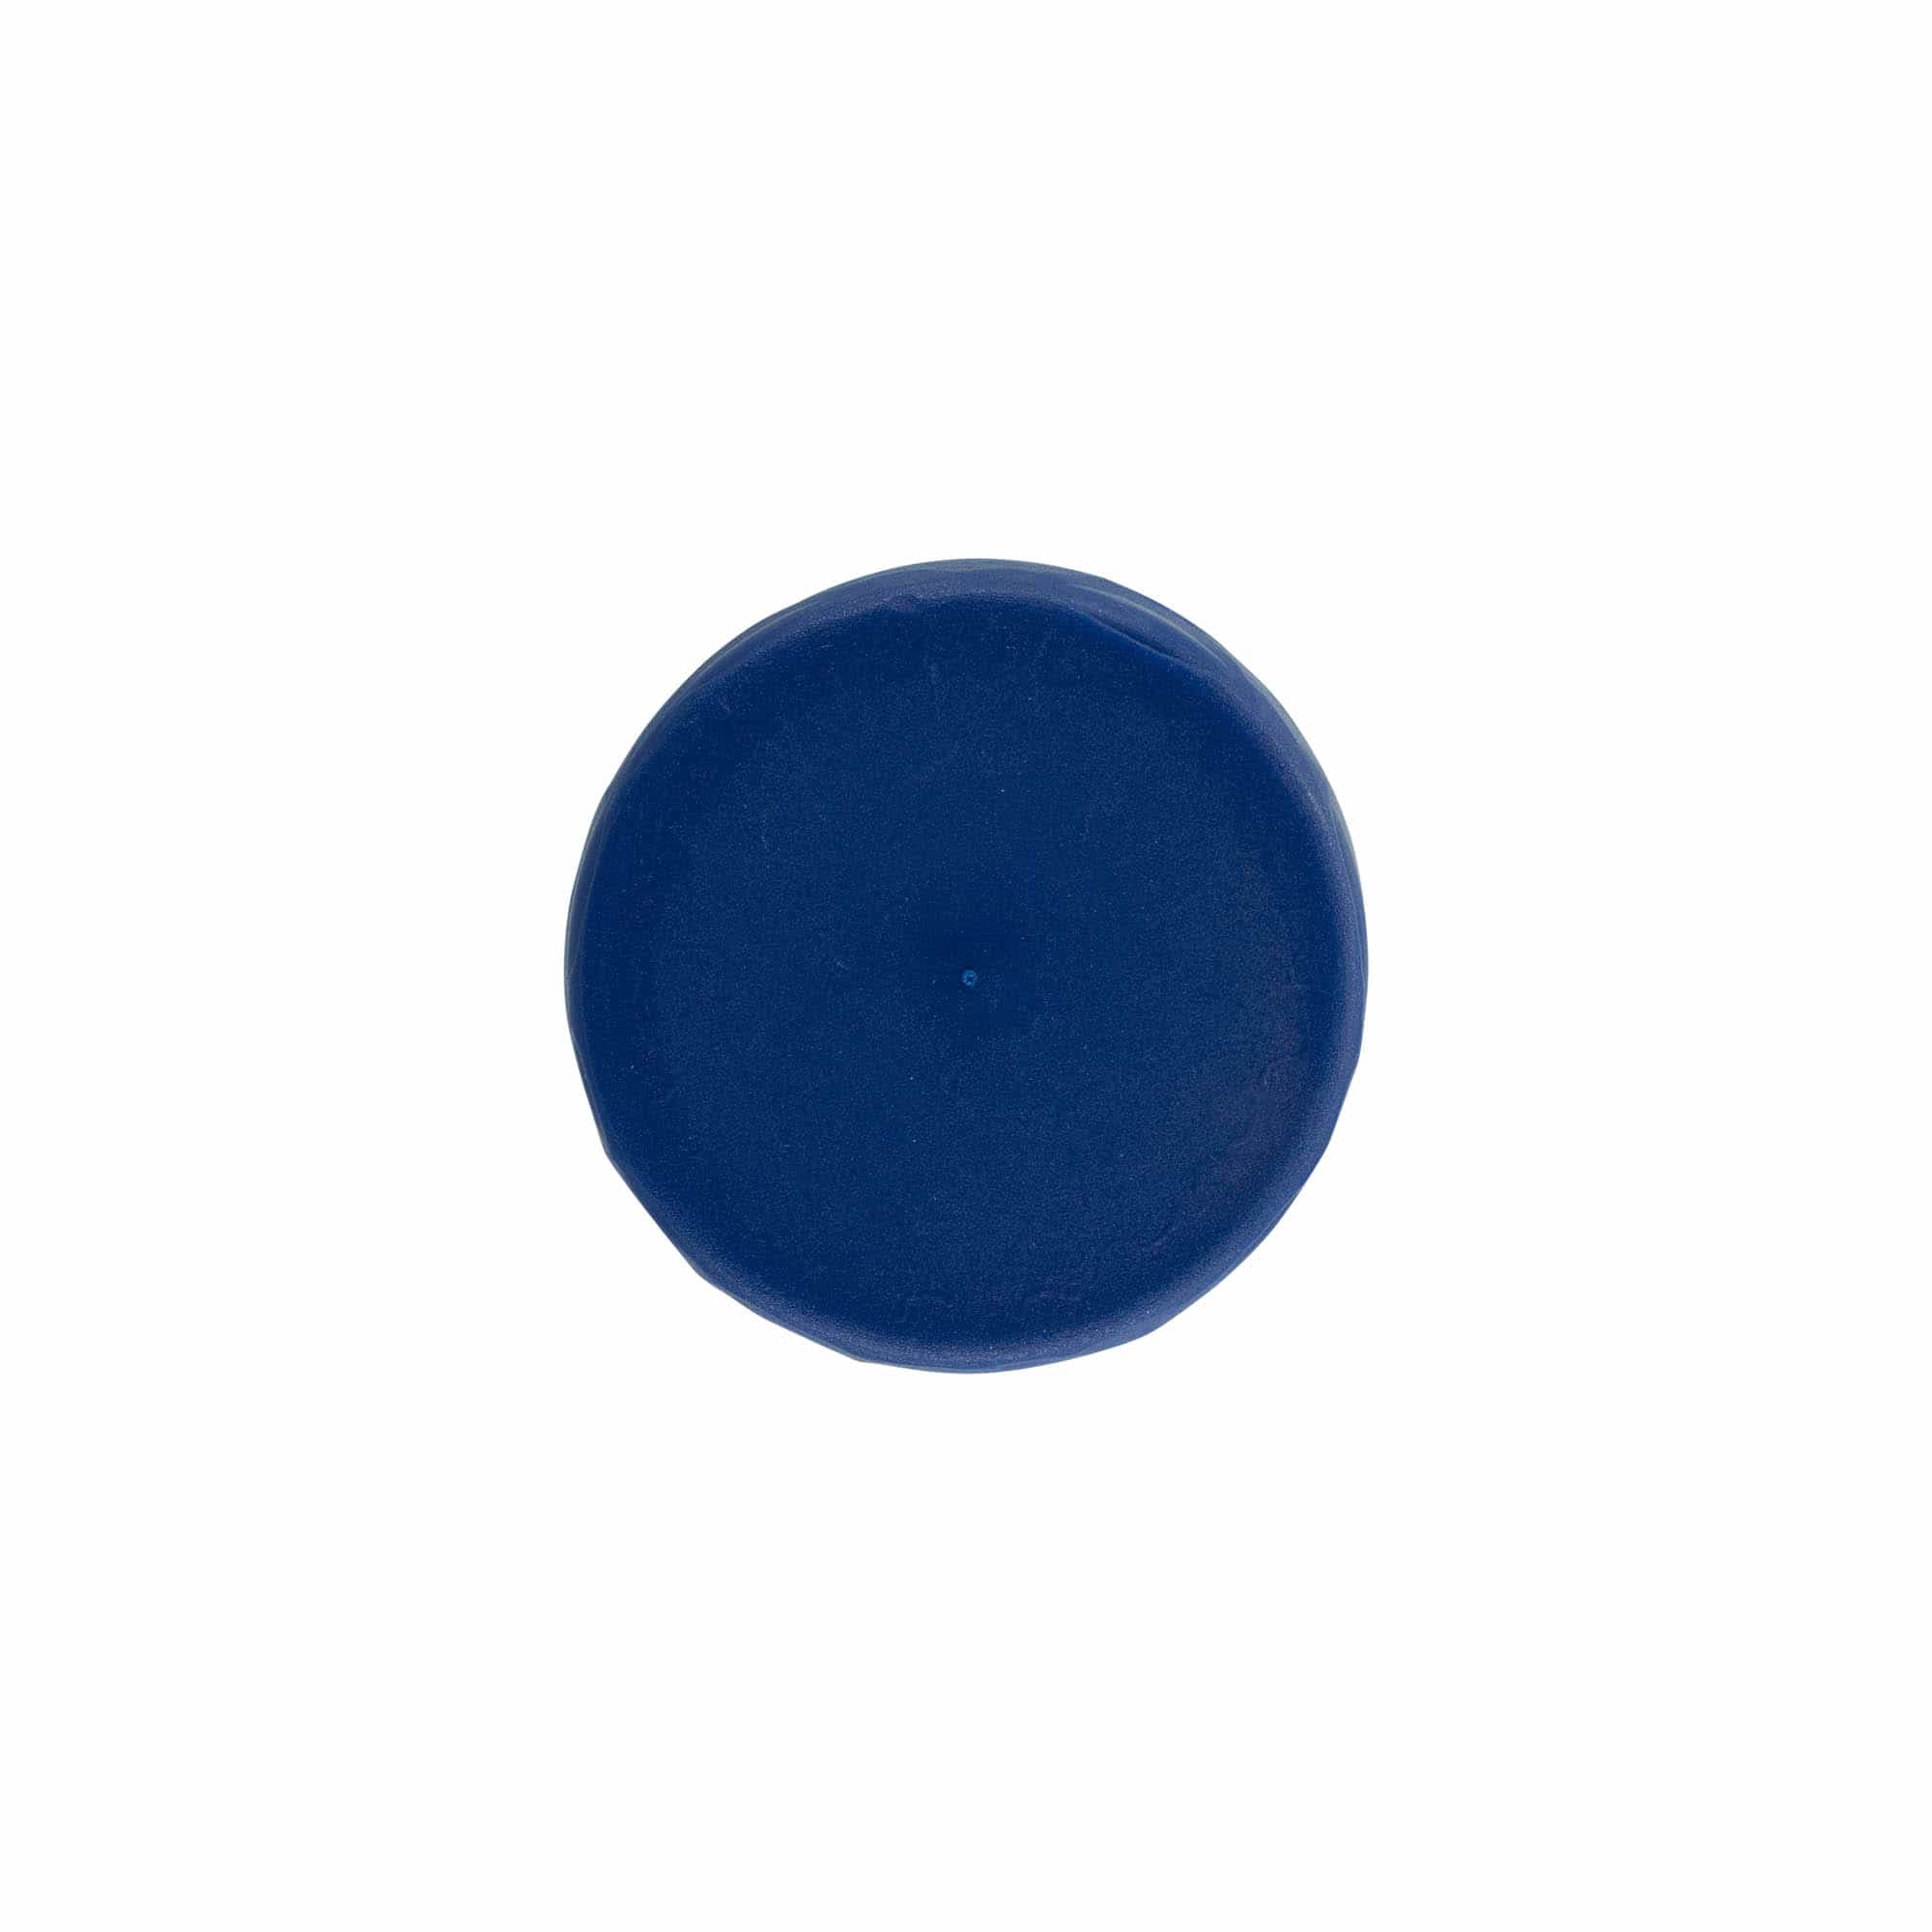 Wieczko do słoiczka kamionkowego z wąską szyjką, tworzywo sztuczne HDPE, kolor niebieski